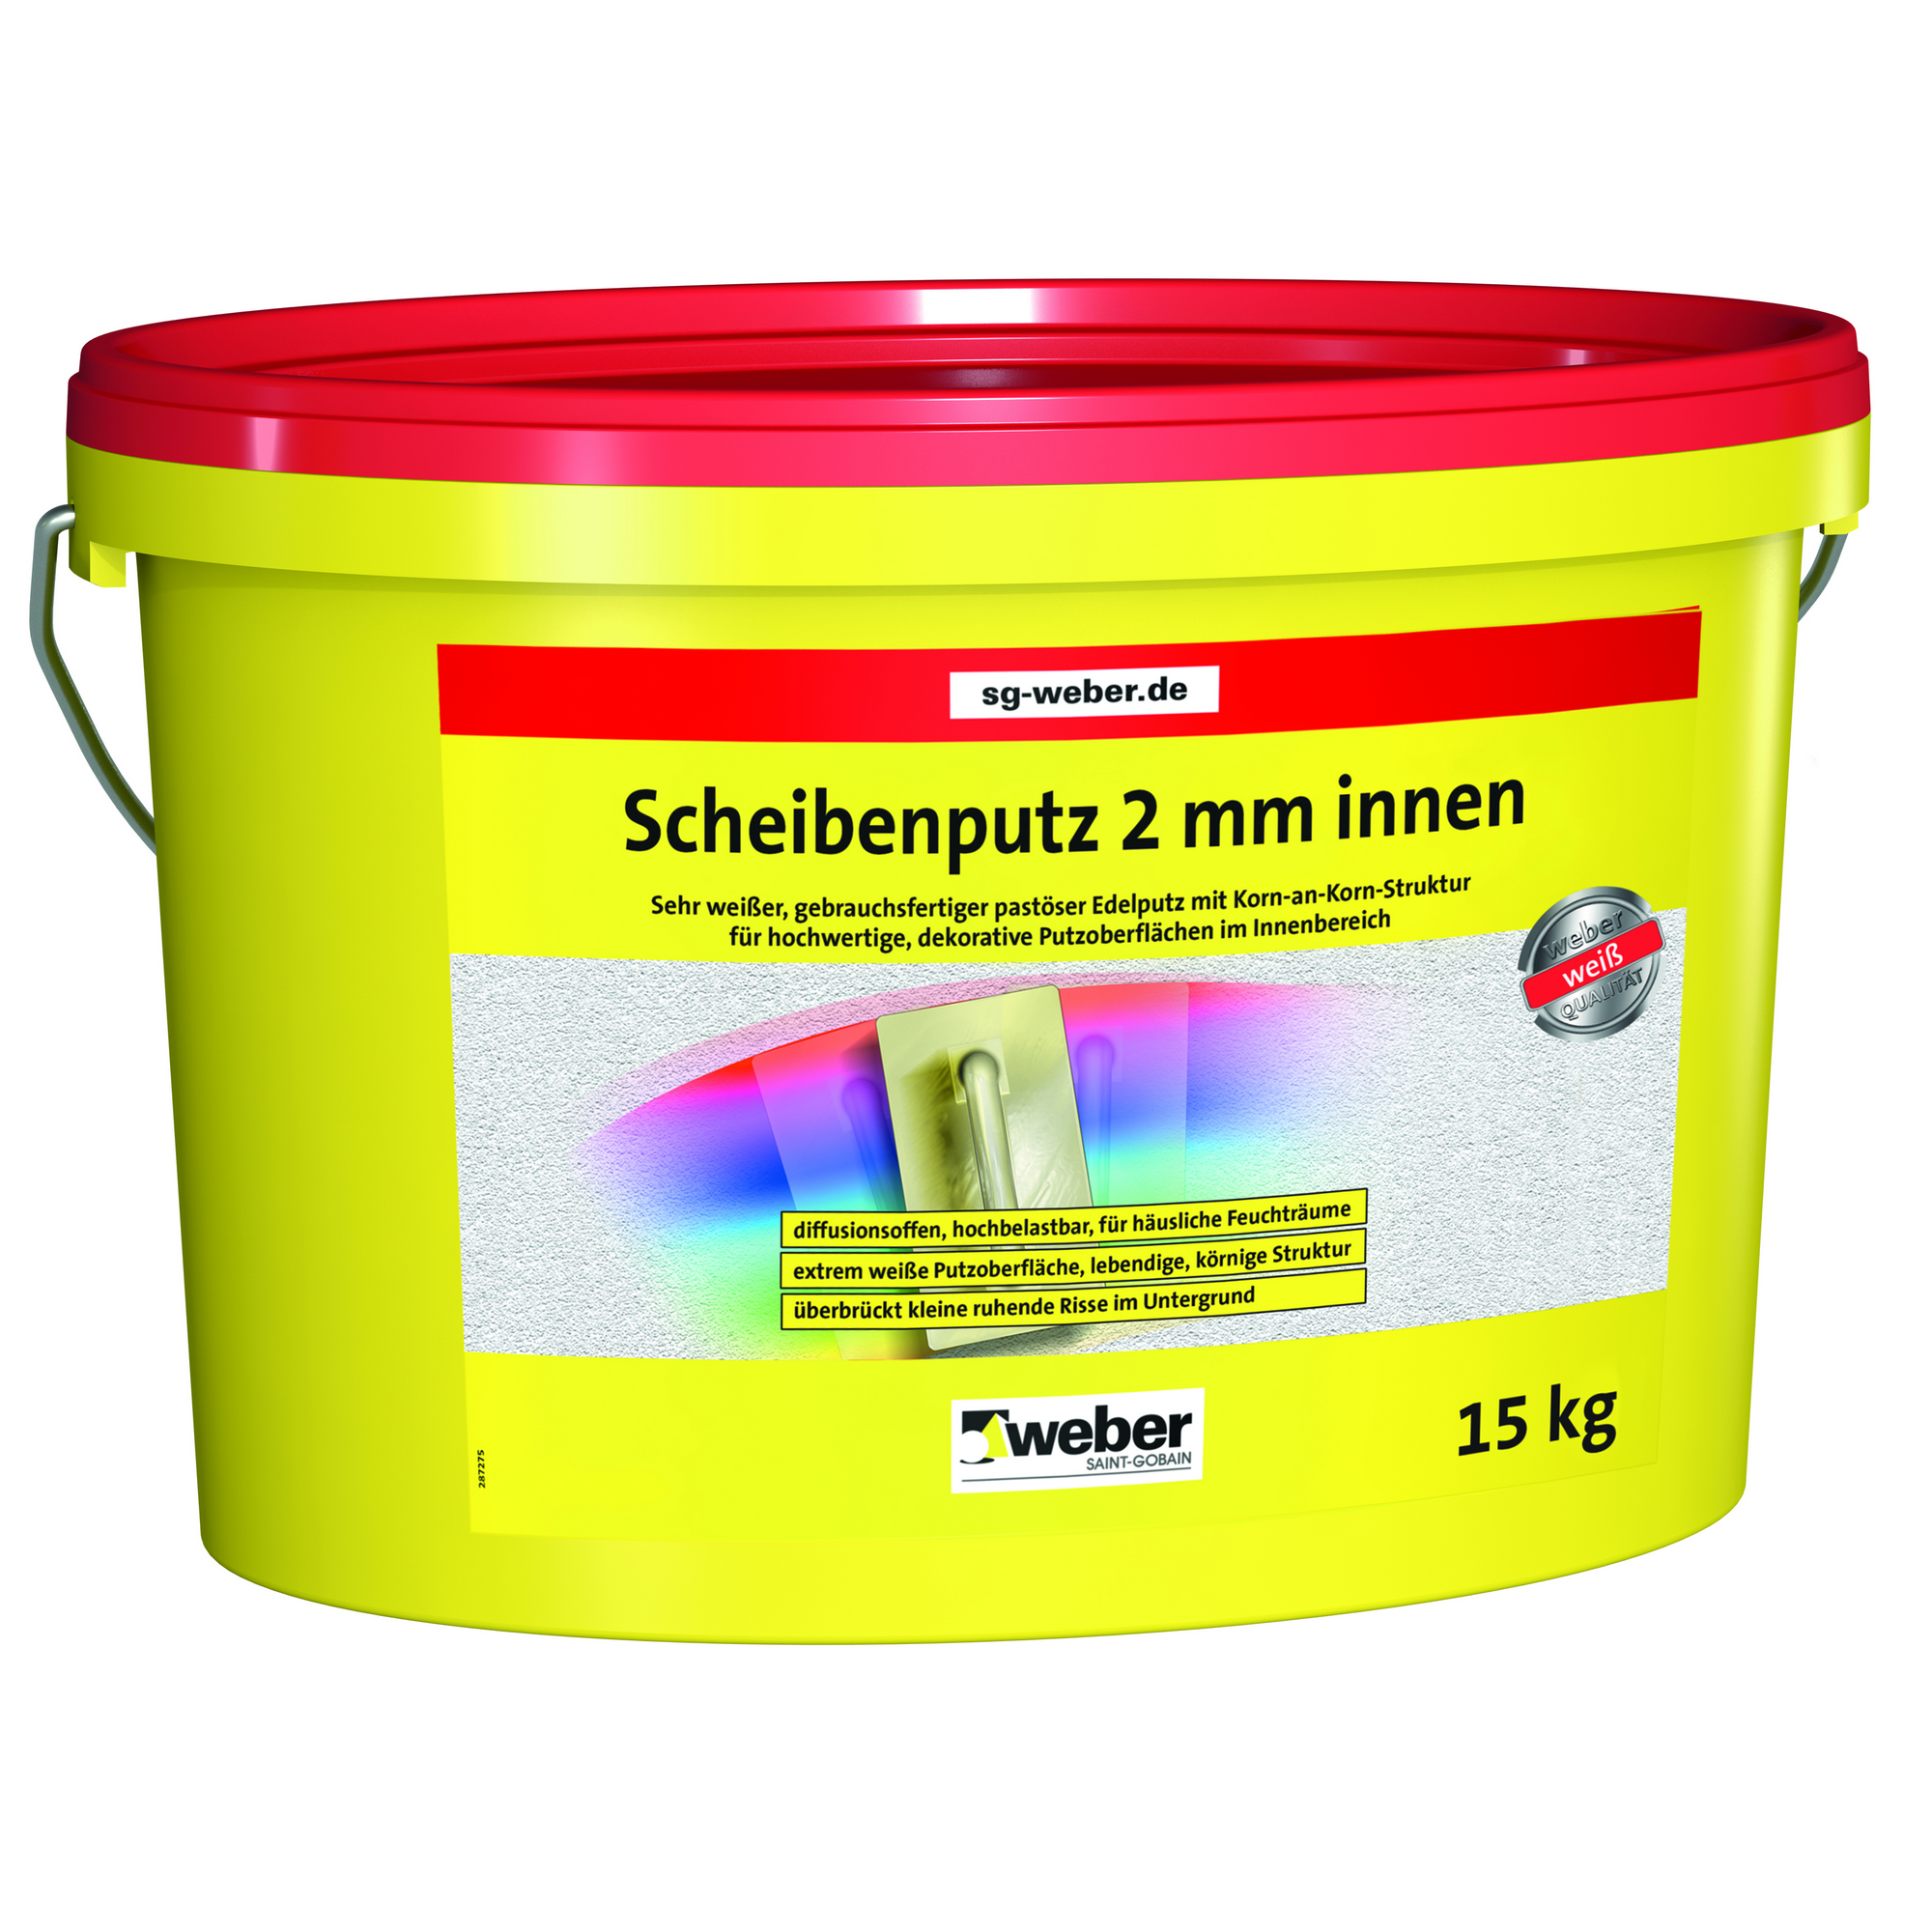 Scheibenputz 15 kg + product picture